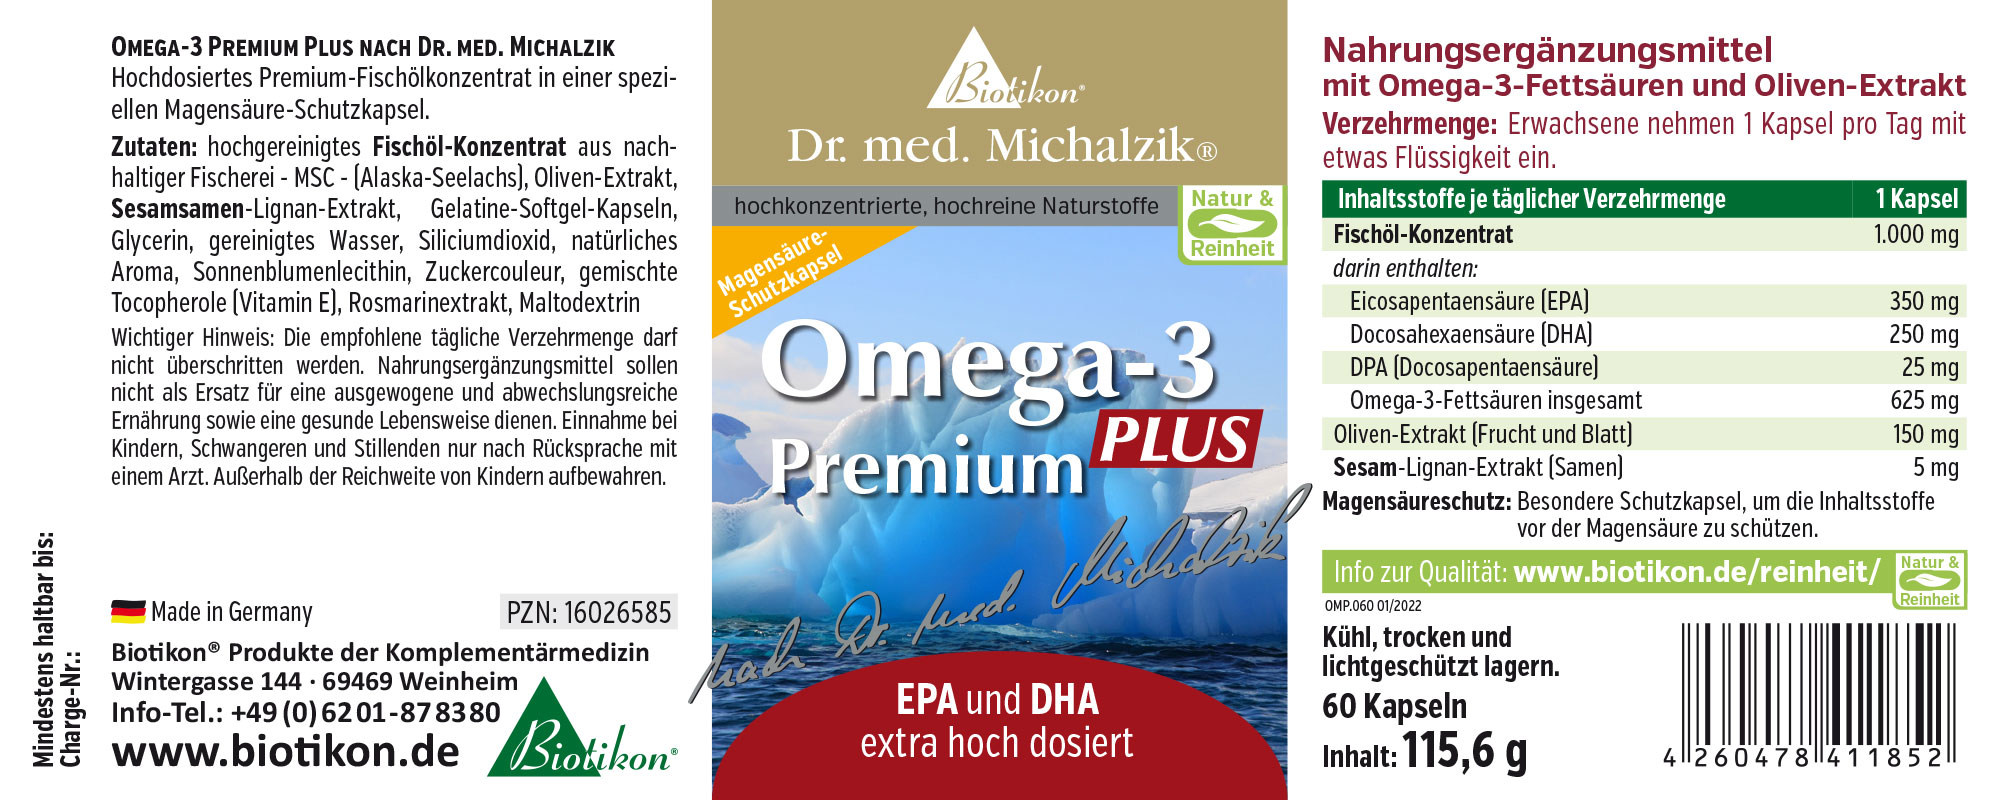 Omega-3 Premium PLUS